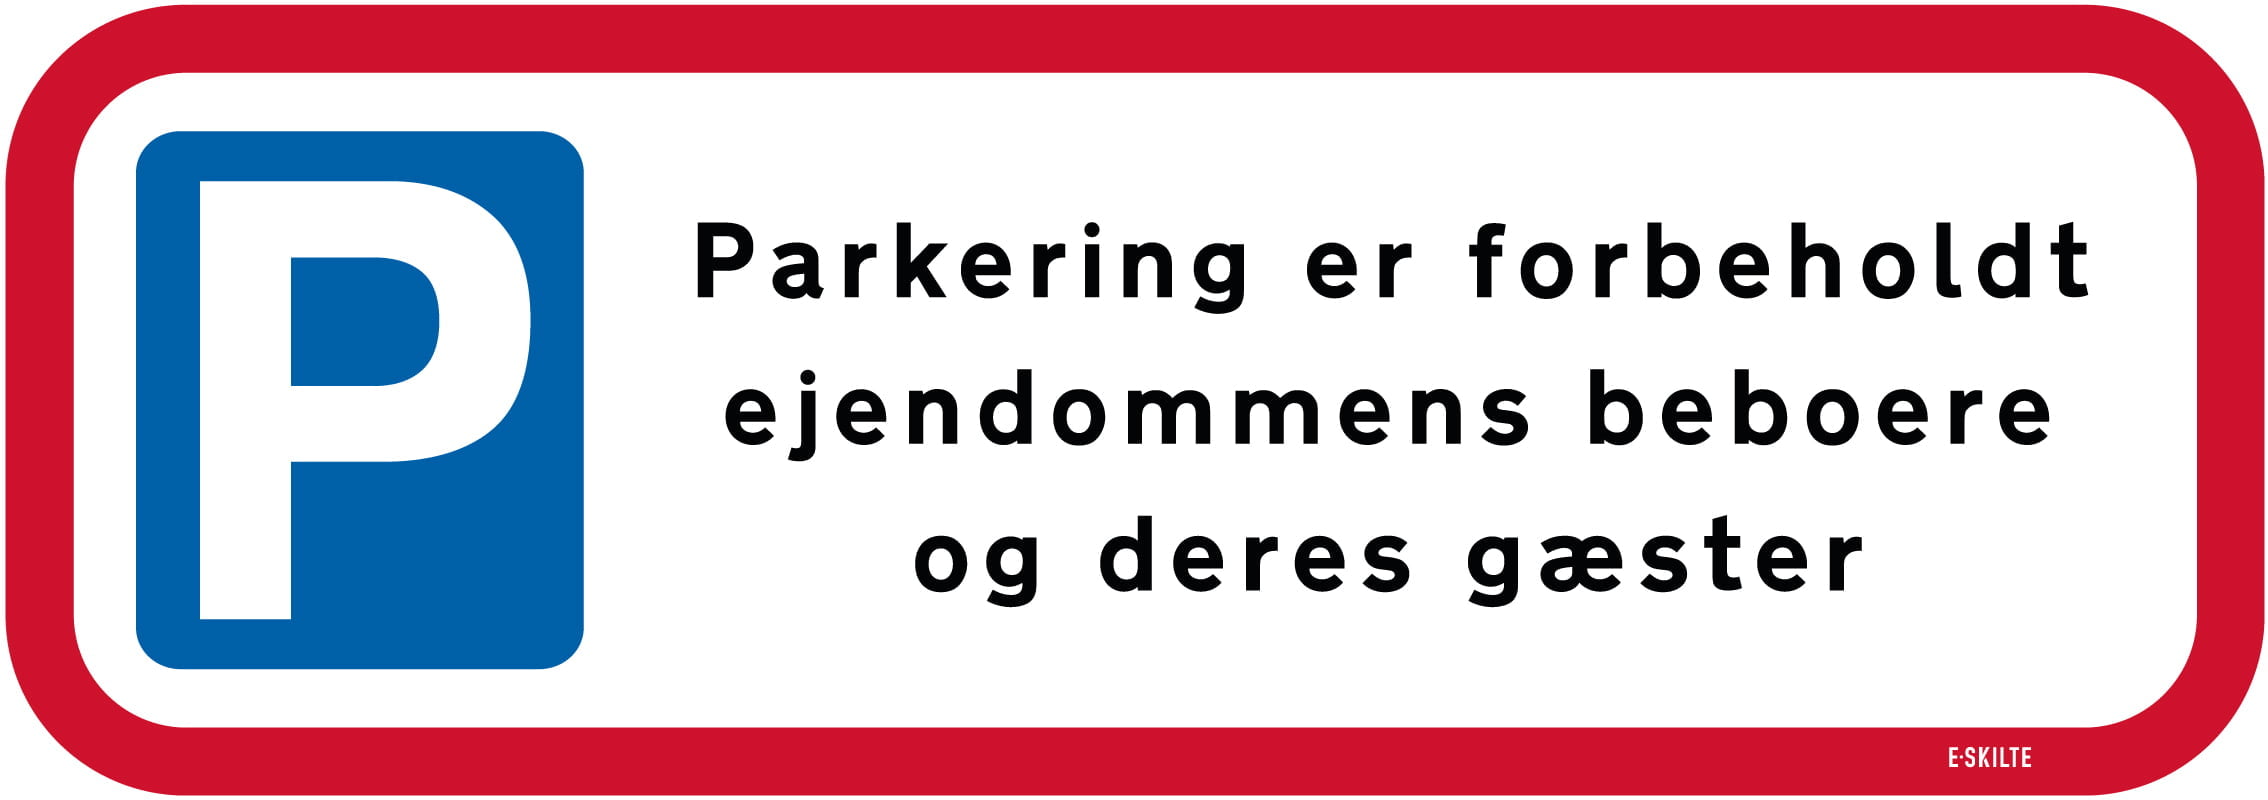 Parkering er forbeholdt ejendommens beboere og deres gæster skilt